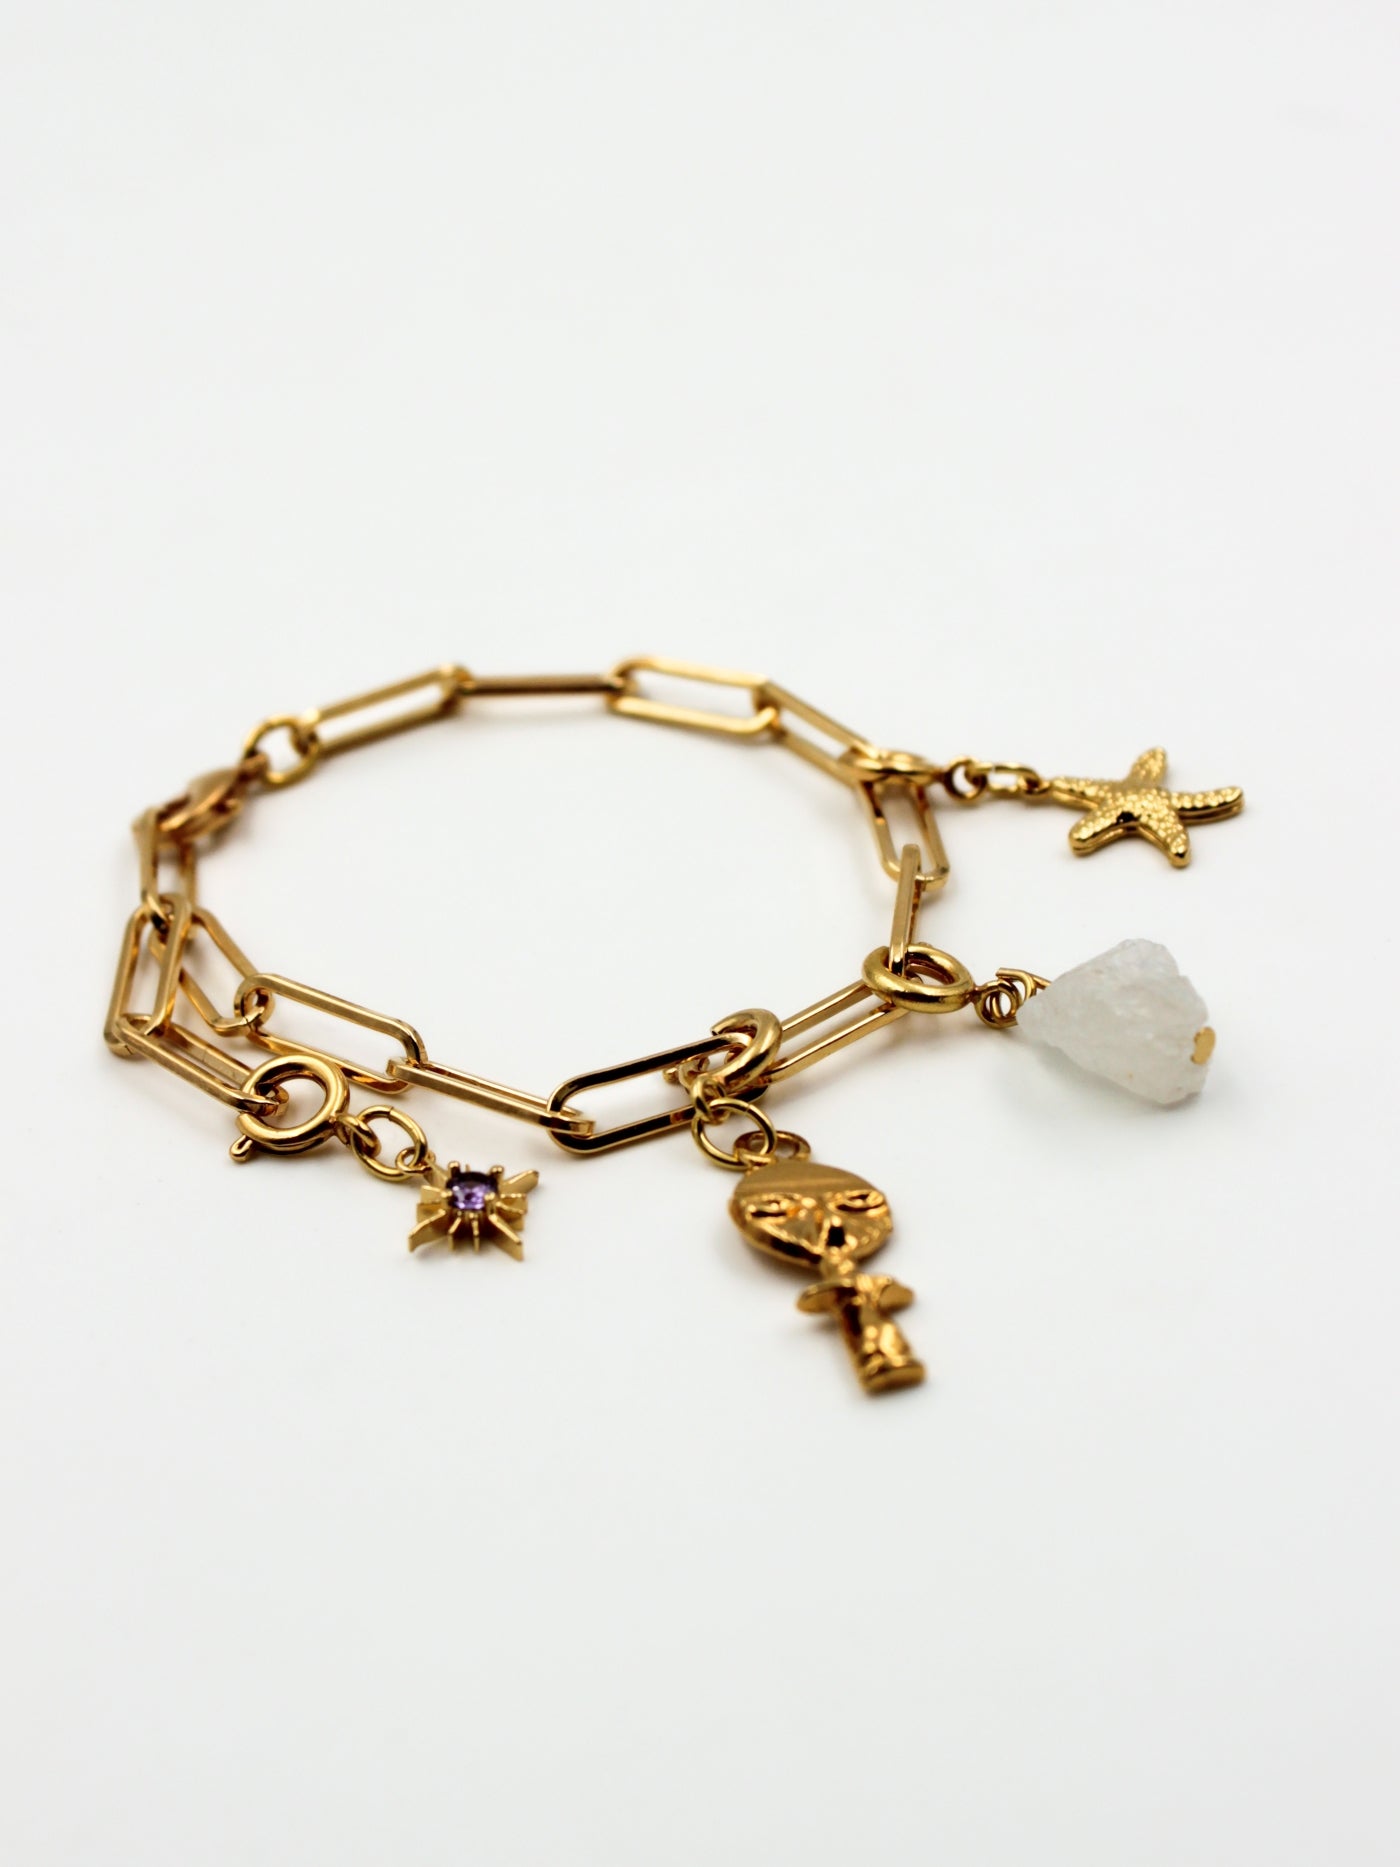 Composition de charms sur base bracelet mailles rectangle de la gamme GRIGRI -L'Atelier des Dames